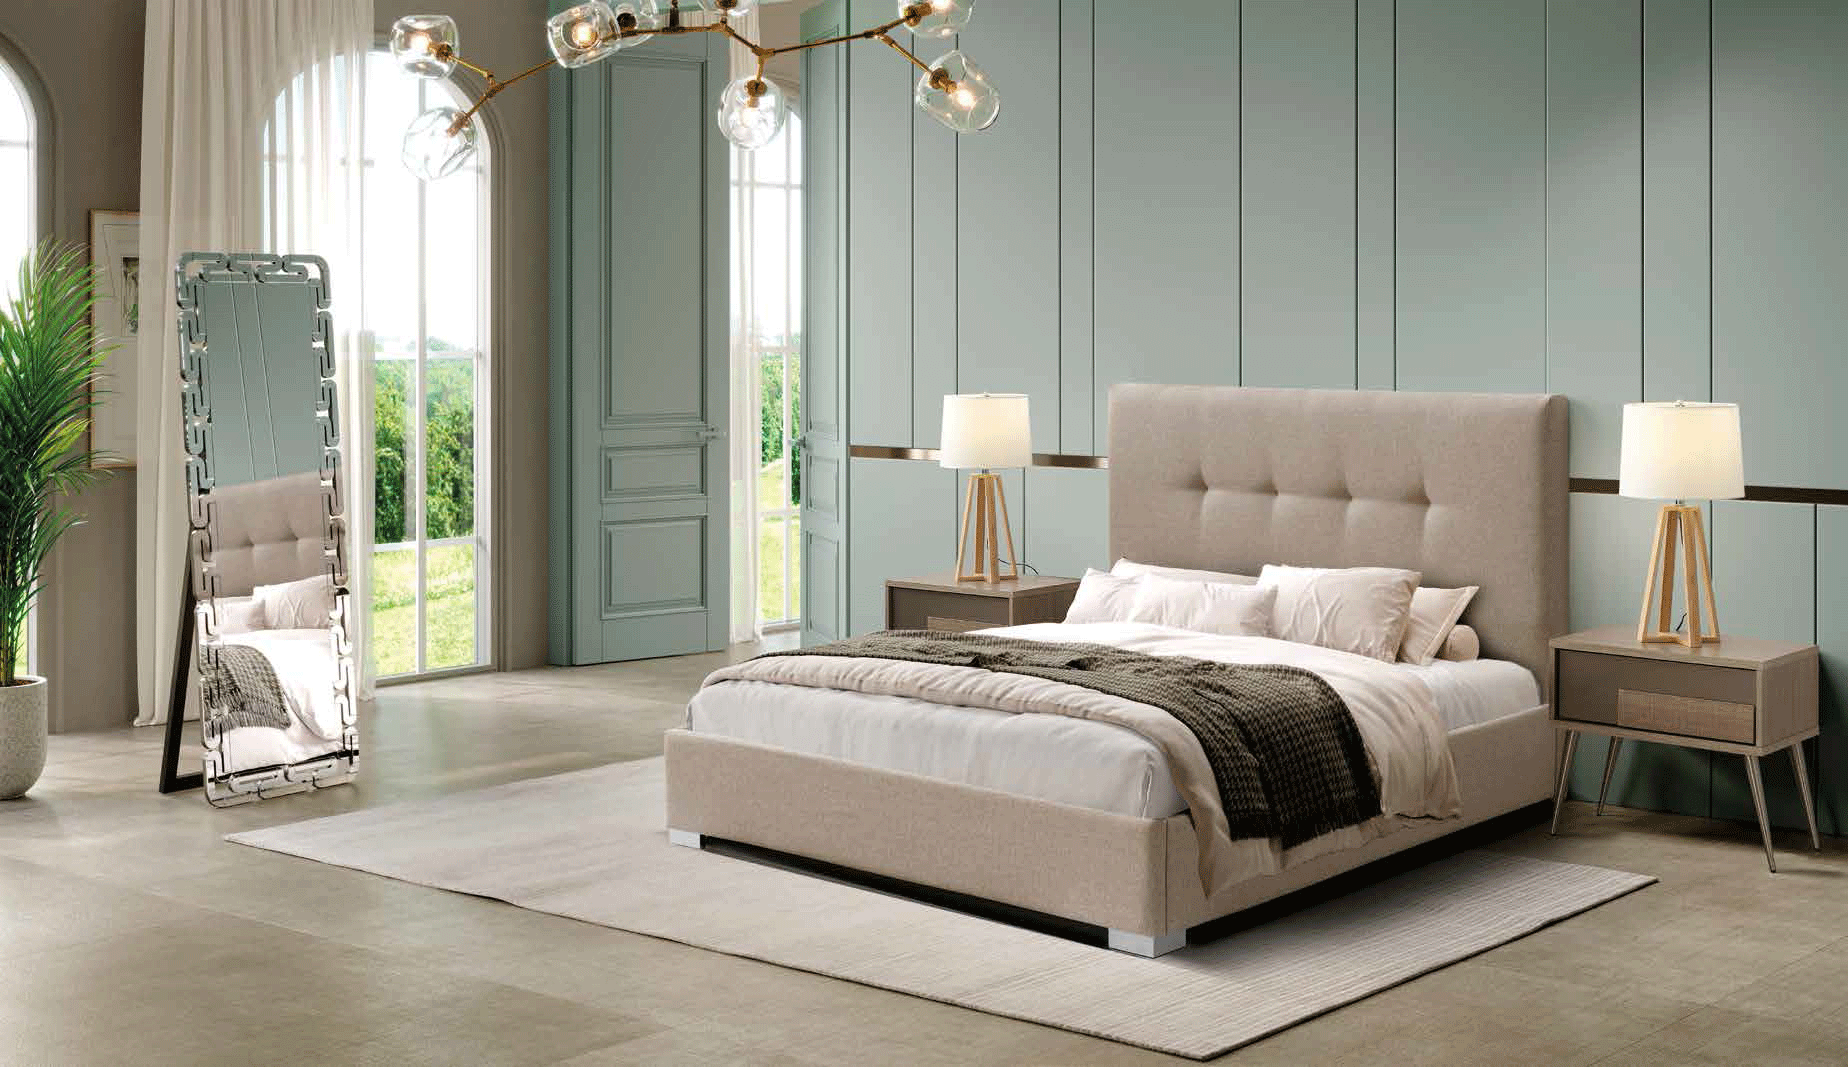 Bedroom Furniture Nightstands 404 Rita, M-162, E-417, LT-8067-G1